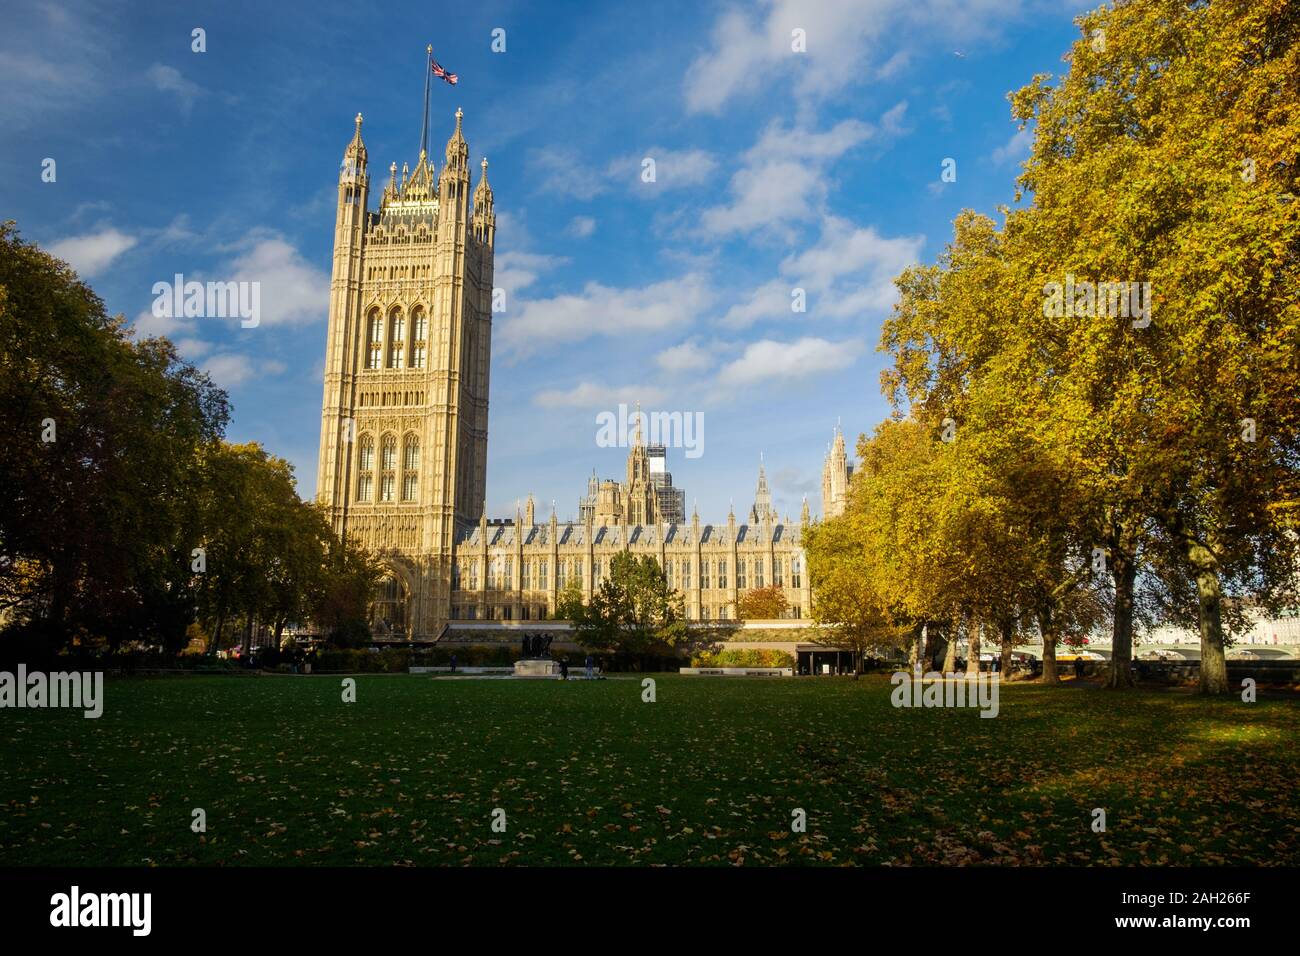 Der Palast von Westminster, mit Victoria Tower auf der linken Seite und ist eines der Wahrzeichen von London. Im Vordergrund, es gibt öffentliche Gärten. Stockfoto